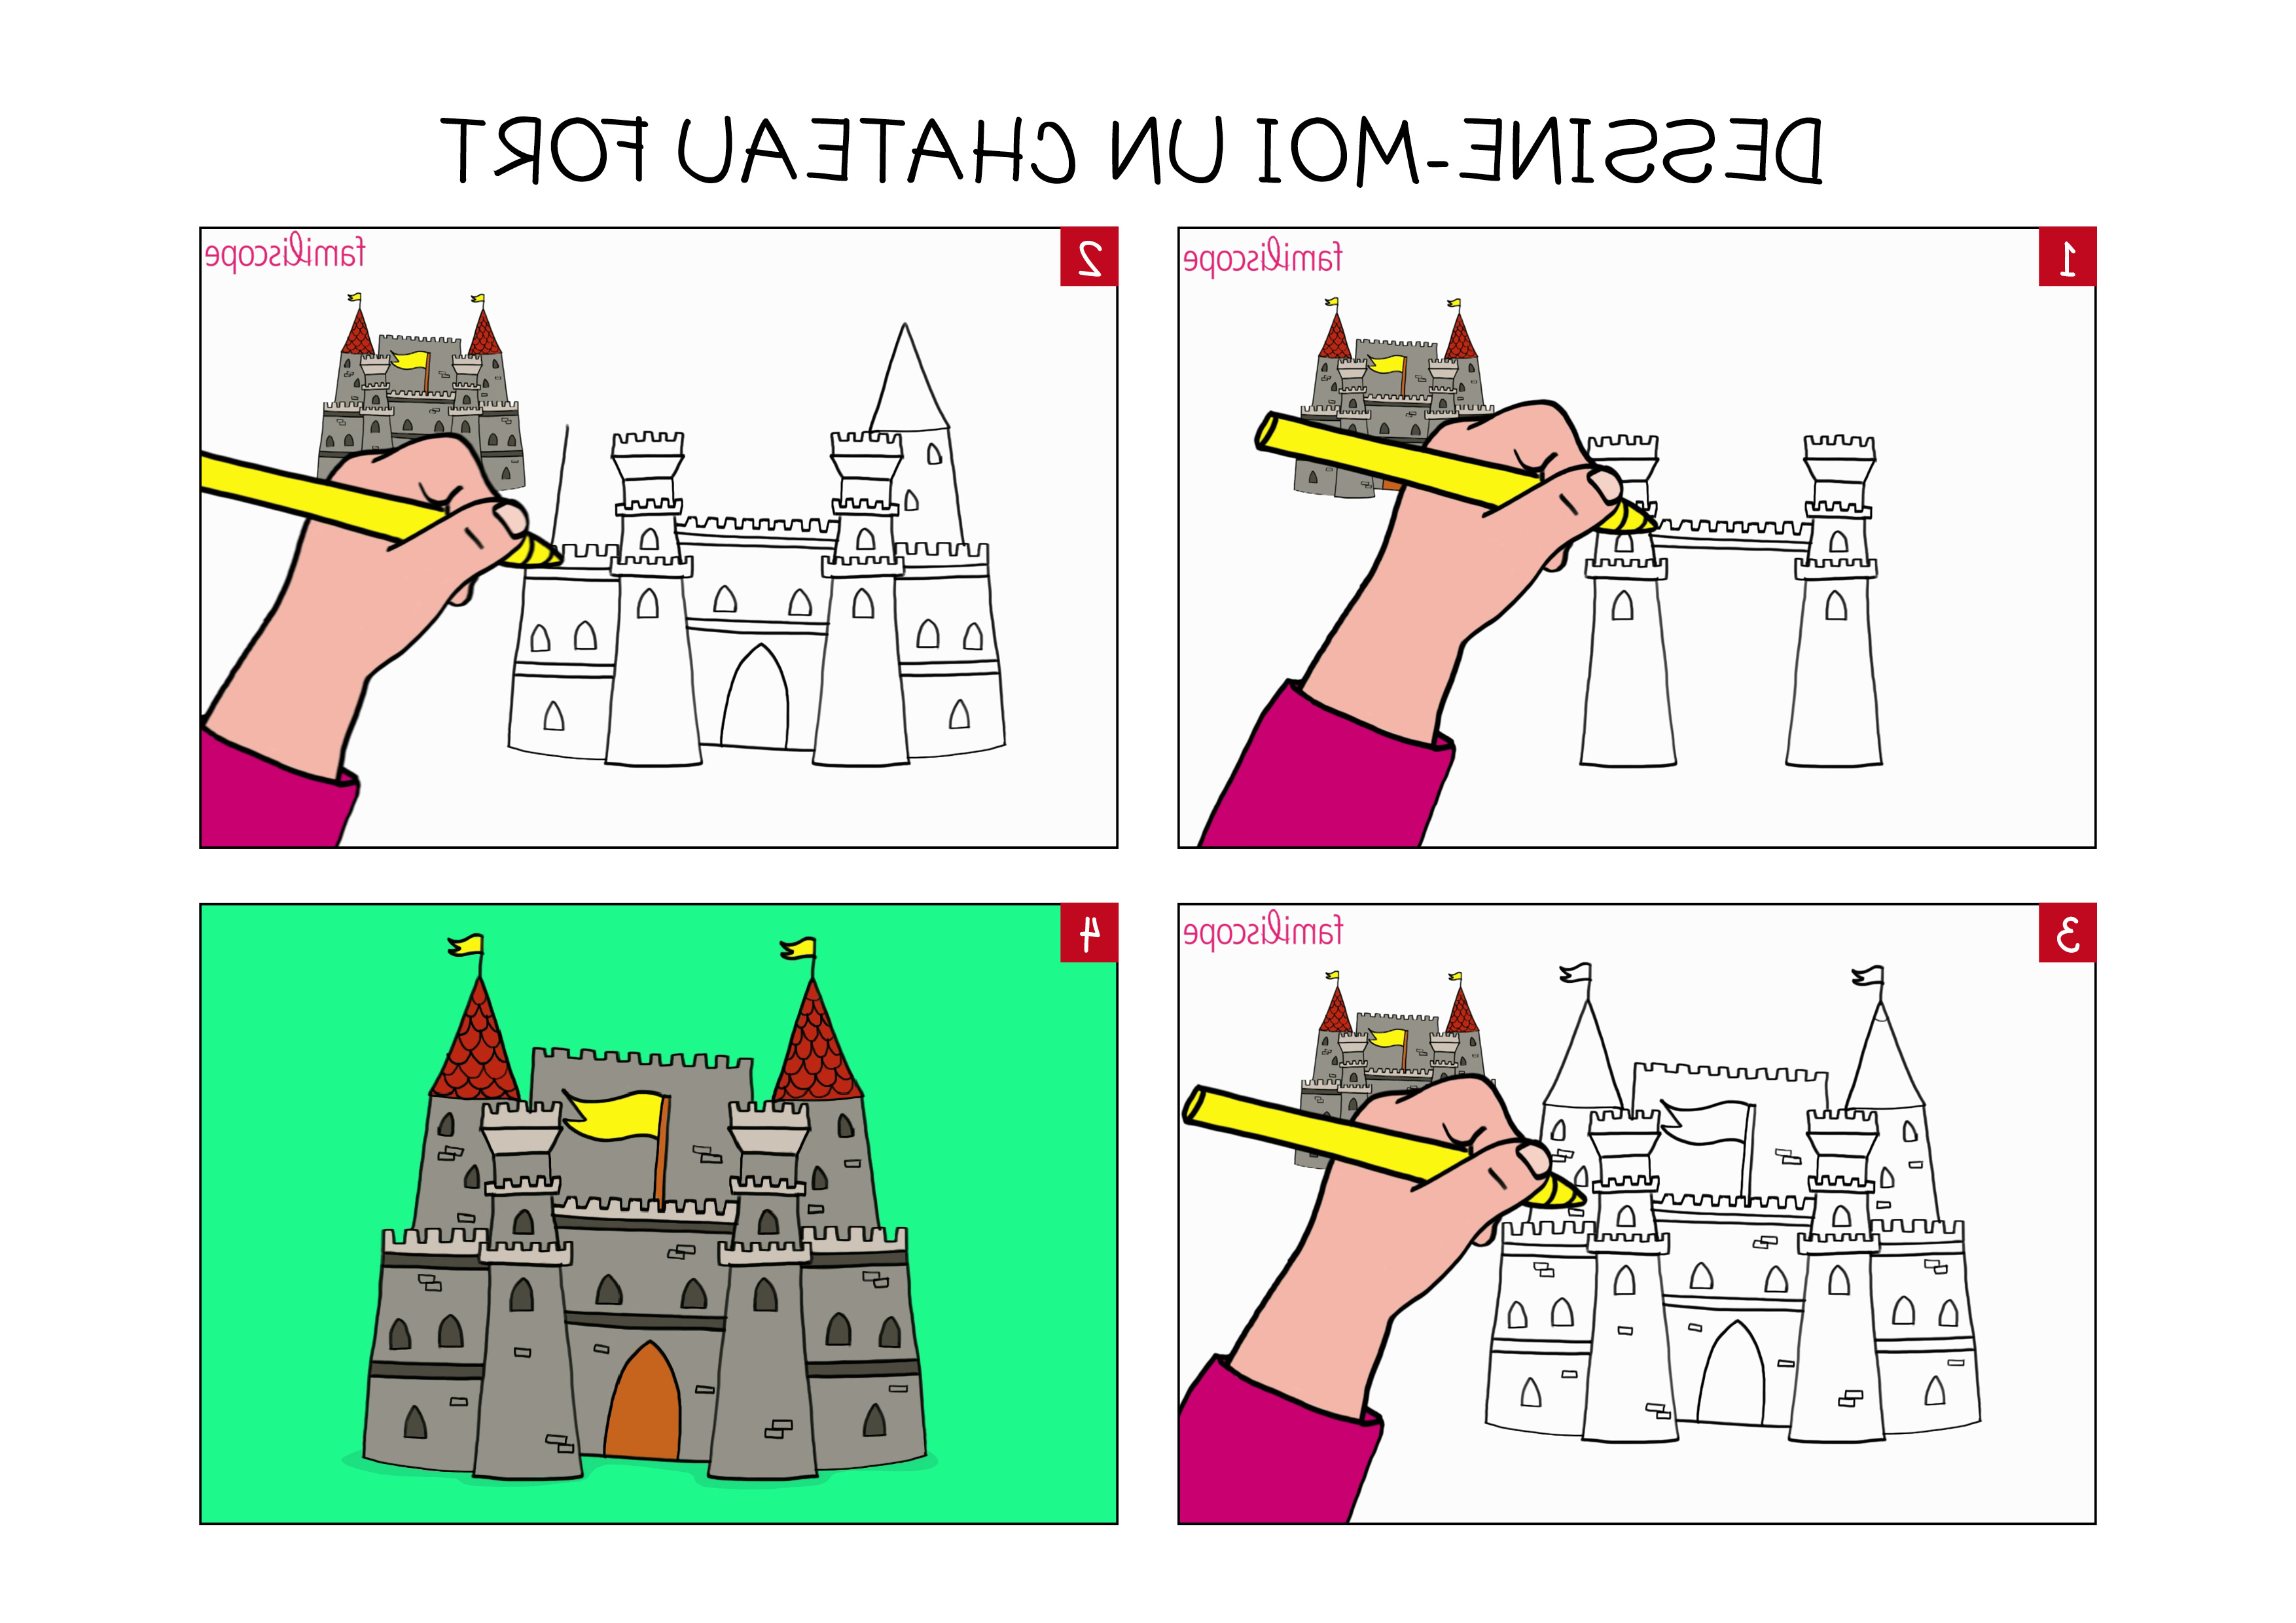 apprendre a dessiner un chateau fort en 3 etapes